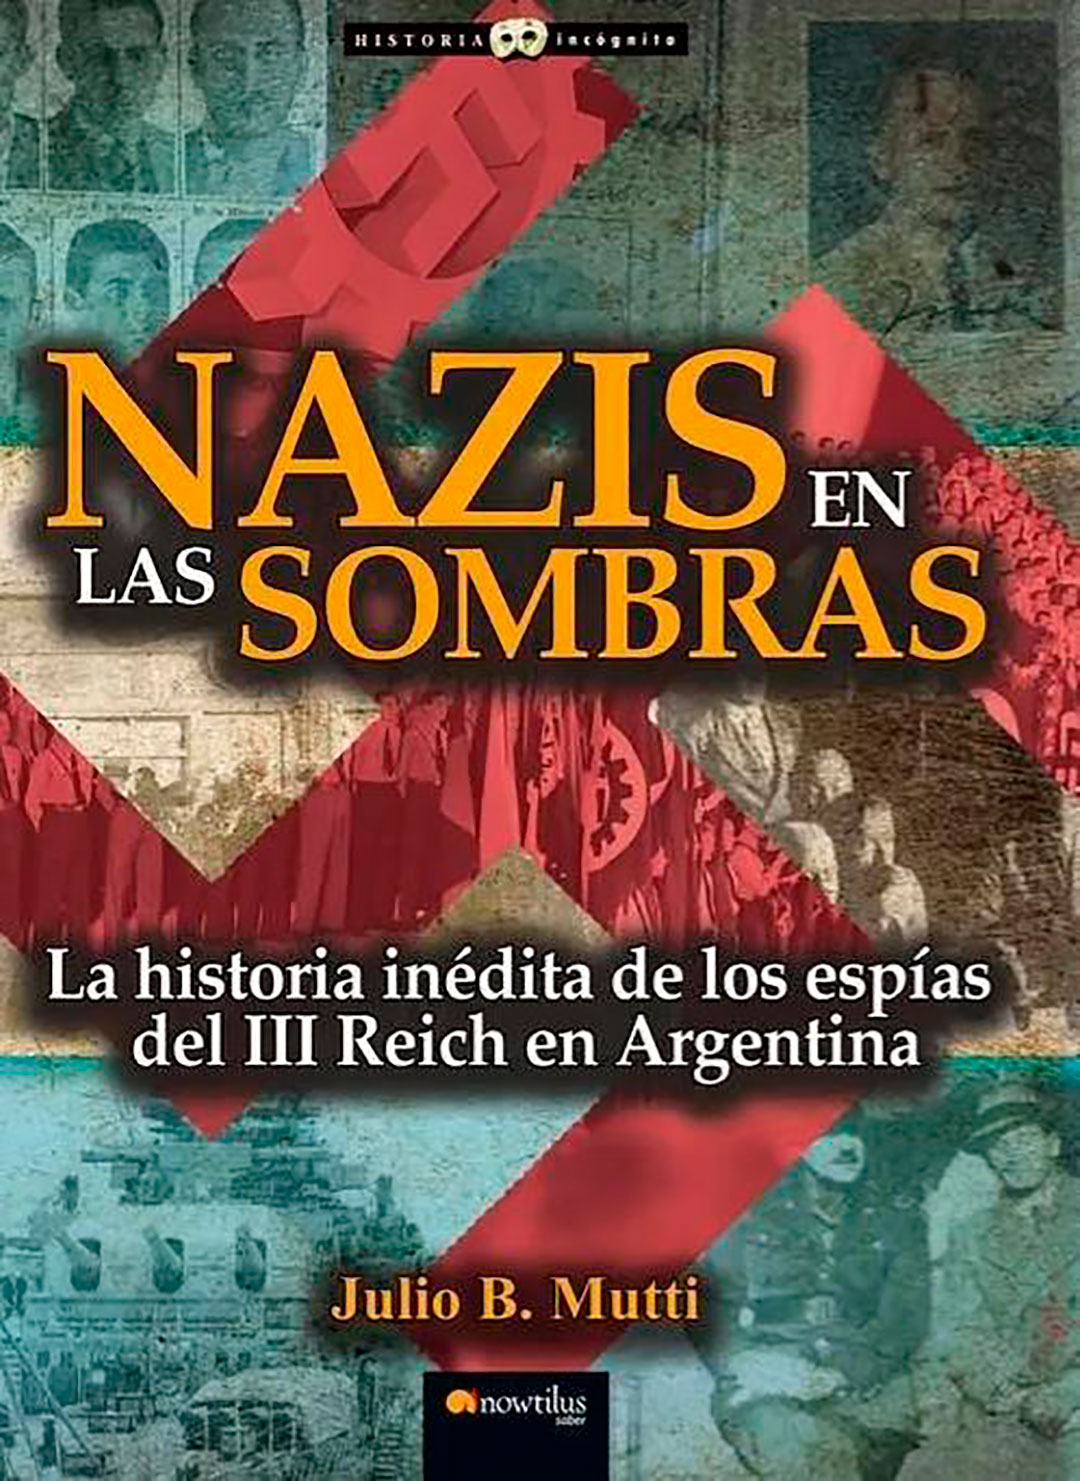 Nazis en las sombras, el libro de Julio B. Mutti que desentraña los secretos de los espías alemanes en Sudamérica